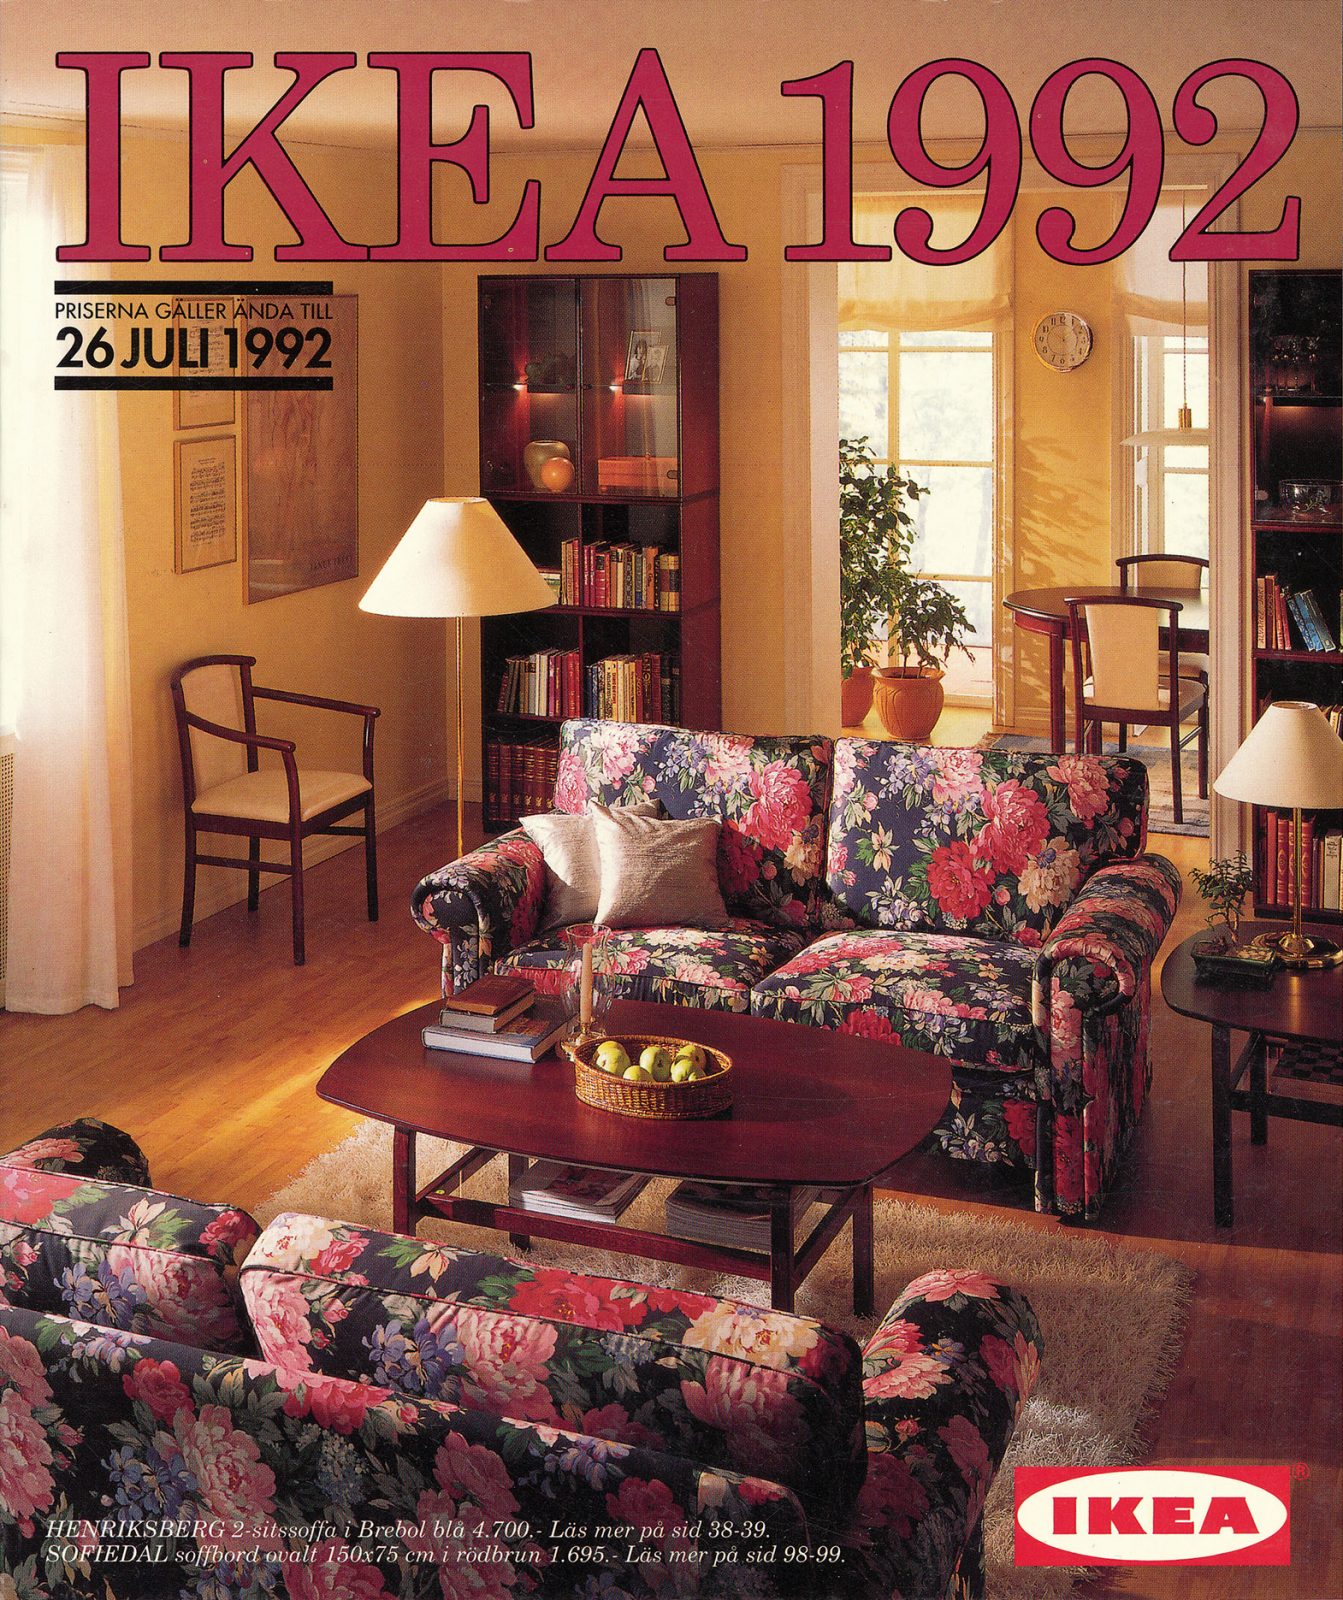 IKEA katalogomslag från 1992 med mörka trämöbler, blommiga soffor och mässingsdetaljer.